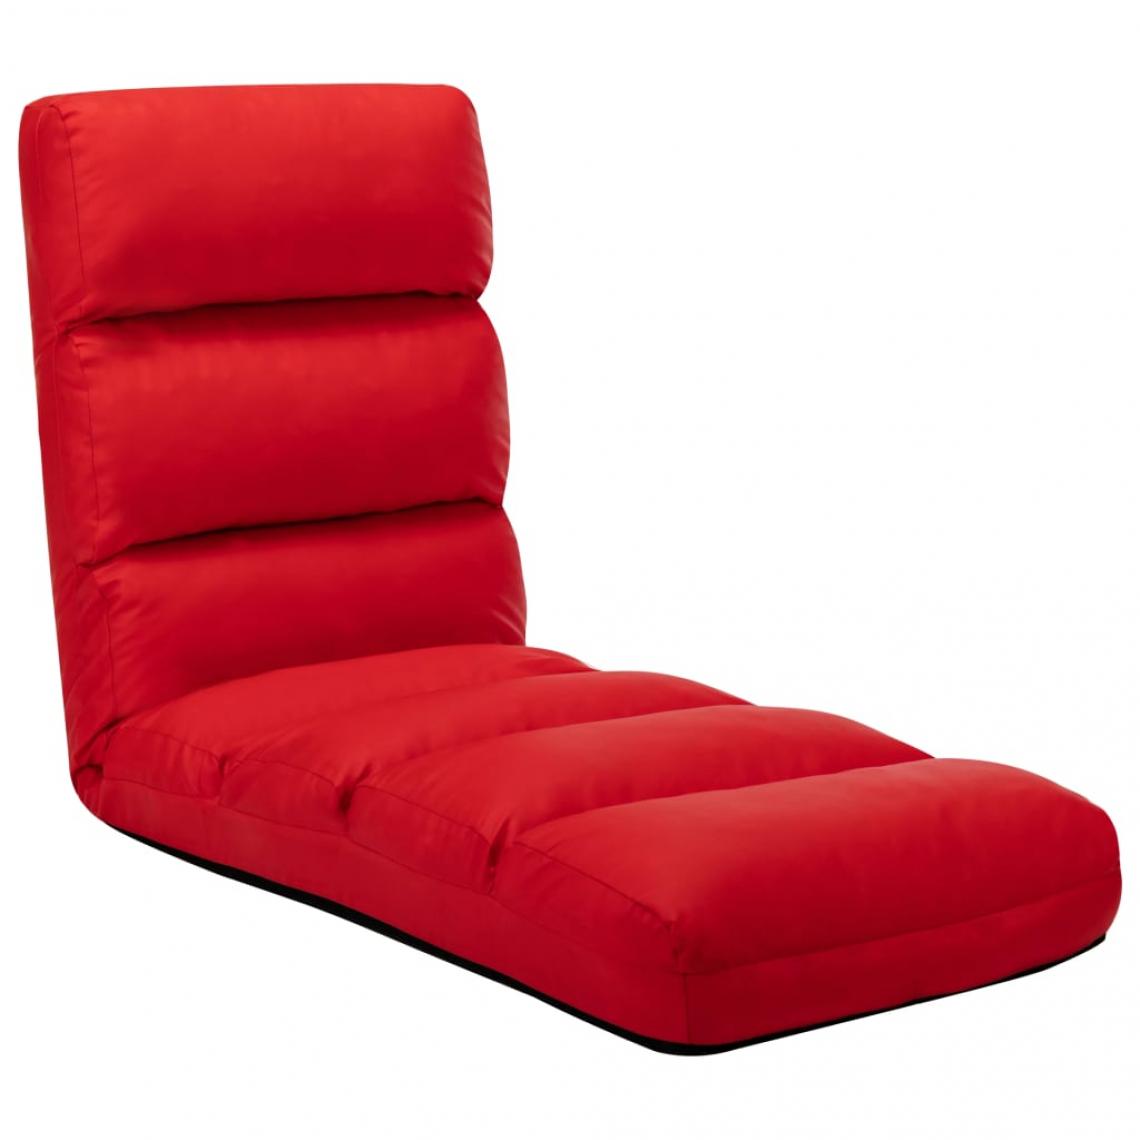 Vidaxl - vidaXL Chaise pliable de sol Rouge Similicuir - Transats, chaises longues